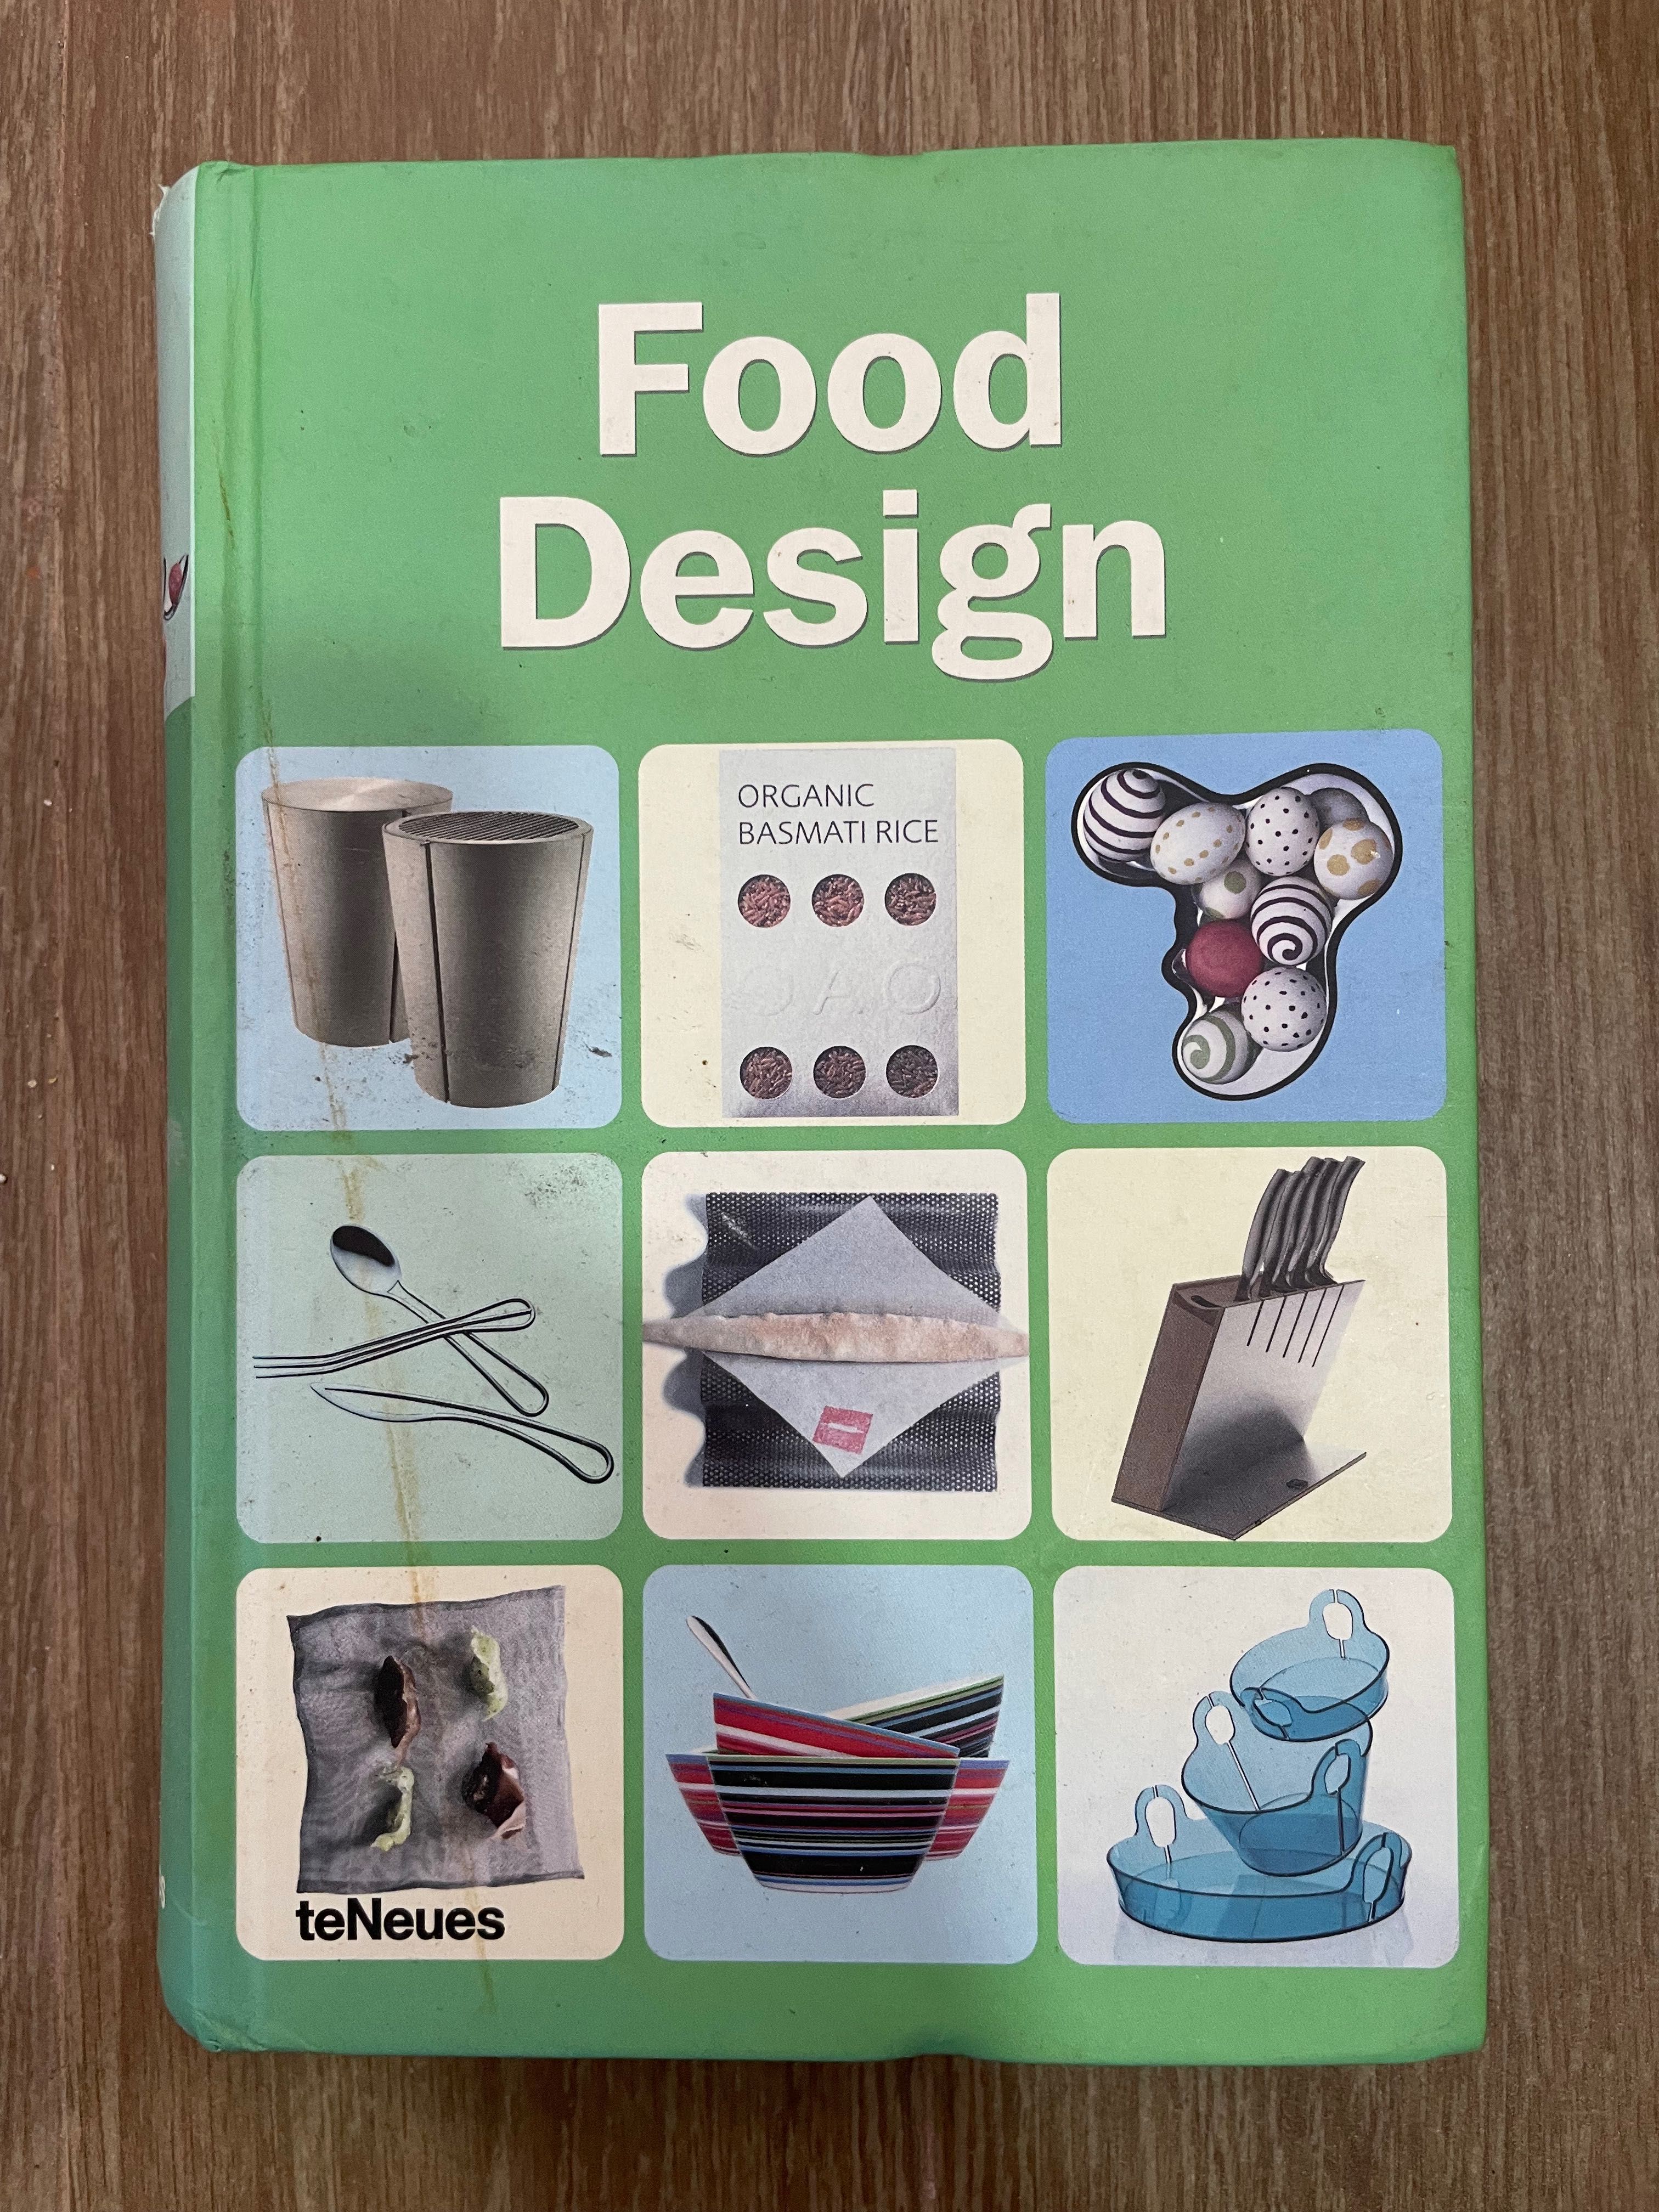 Food Design - Cristian Campos (portes grátis)